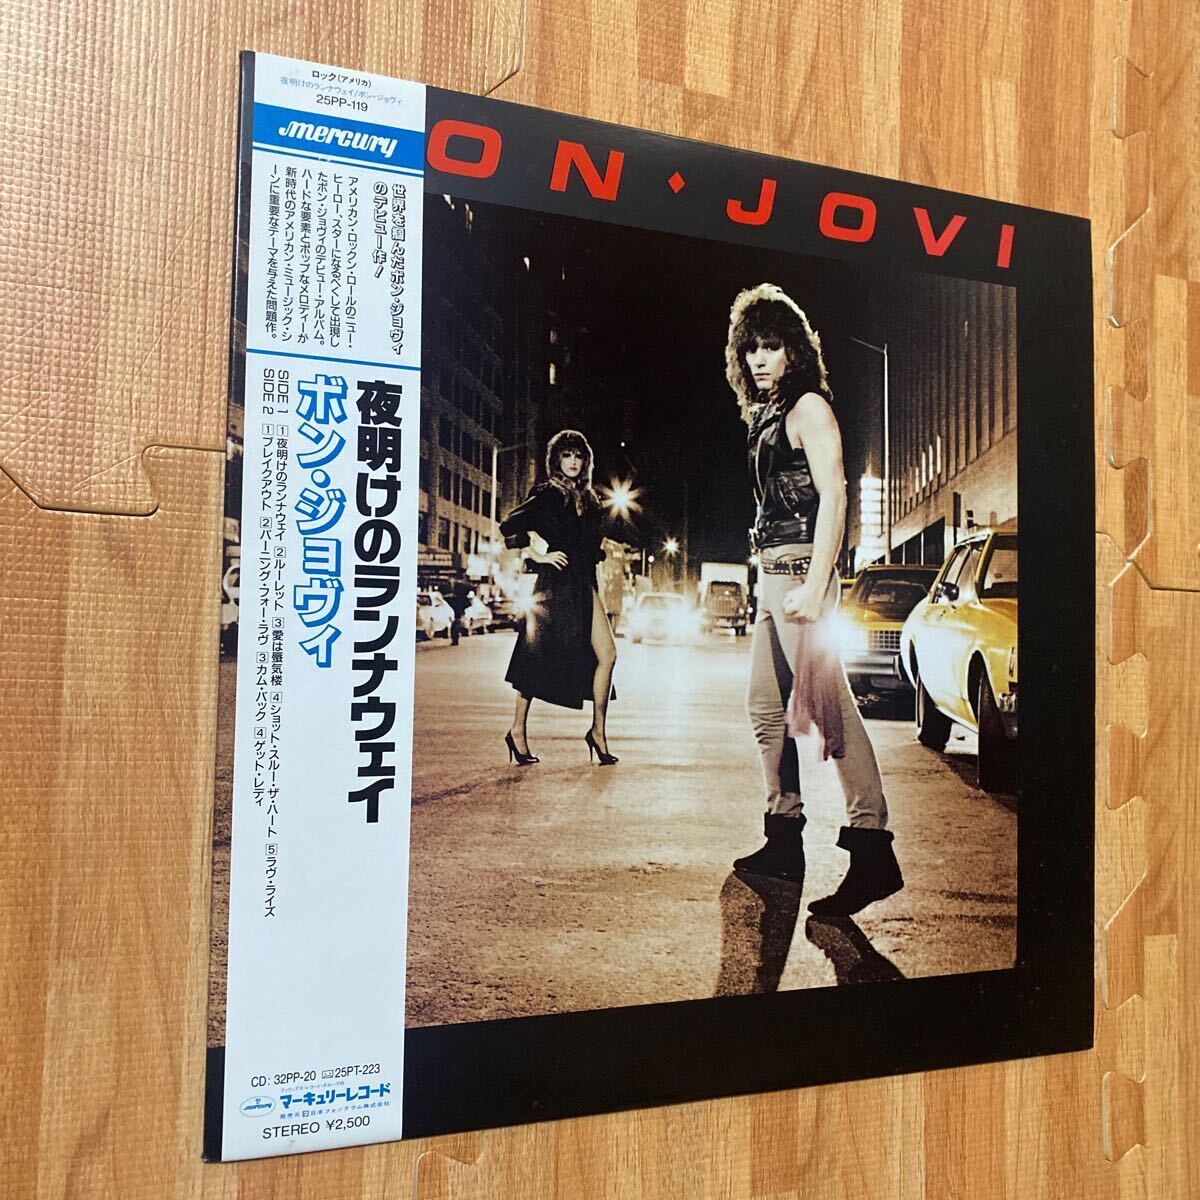 Bon Jovi ボン・ジョヴィ夜明けのランナウェイ RUNAWAY レコード LP 帯付き OBI 25PP-119_画像2